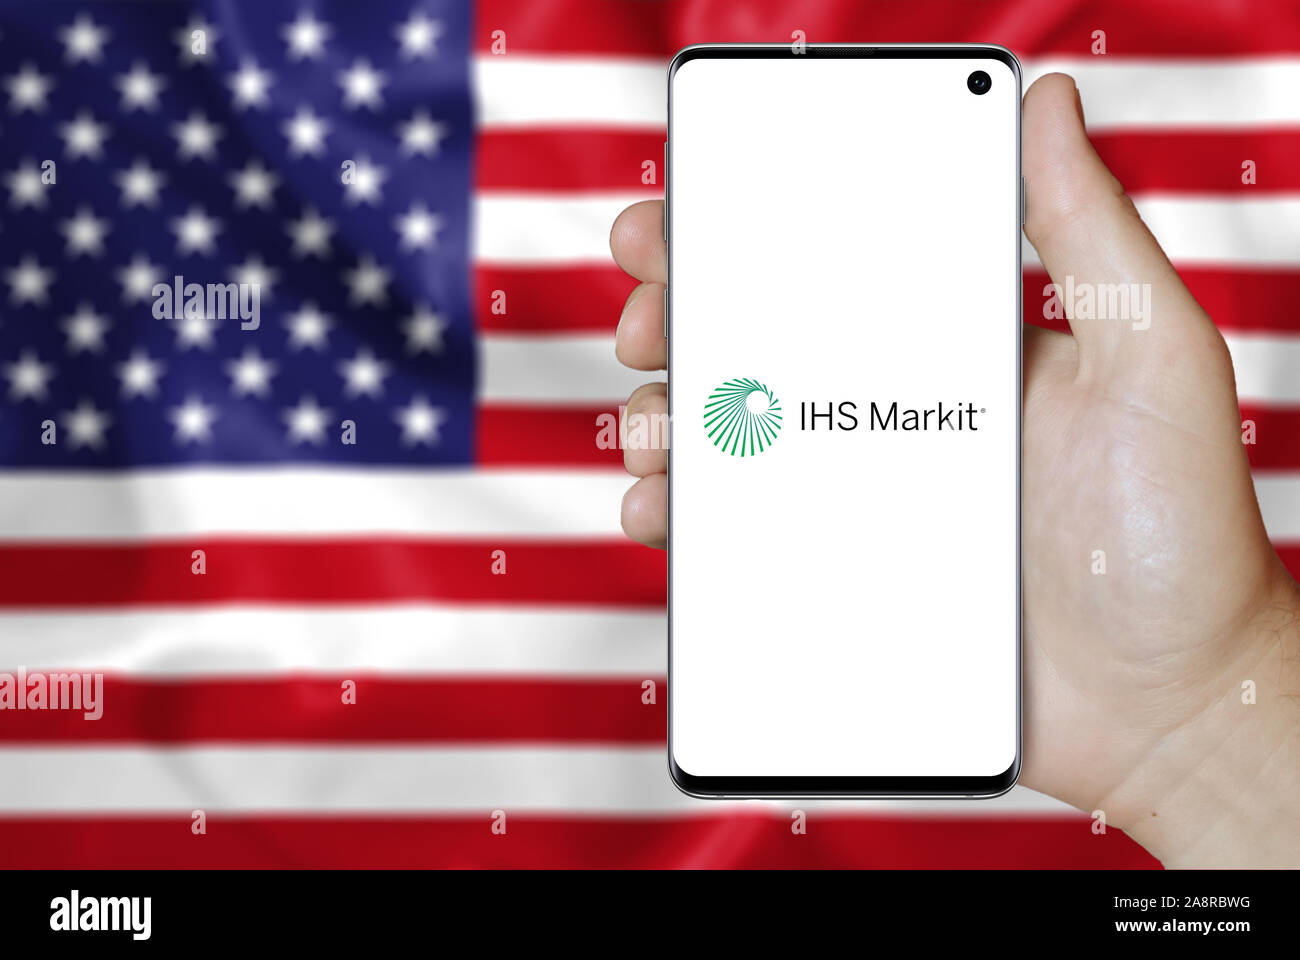 Il logo della società pubblica IHS Markit Ltd. visualizzata su uno smartphone. Bandiera degli Stati Uniti sullo sfondo. Credito: PIXDUCE Foto Stock